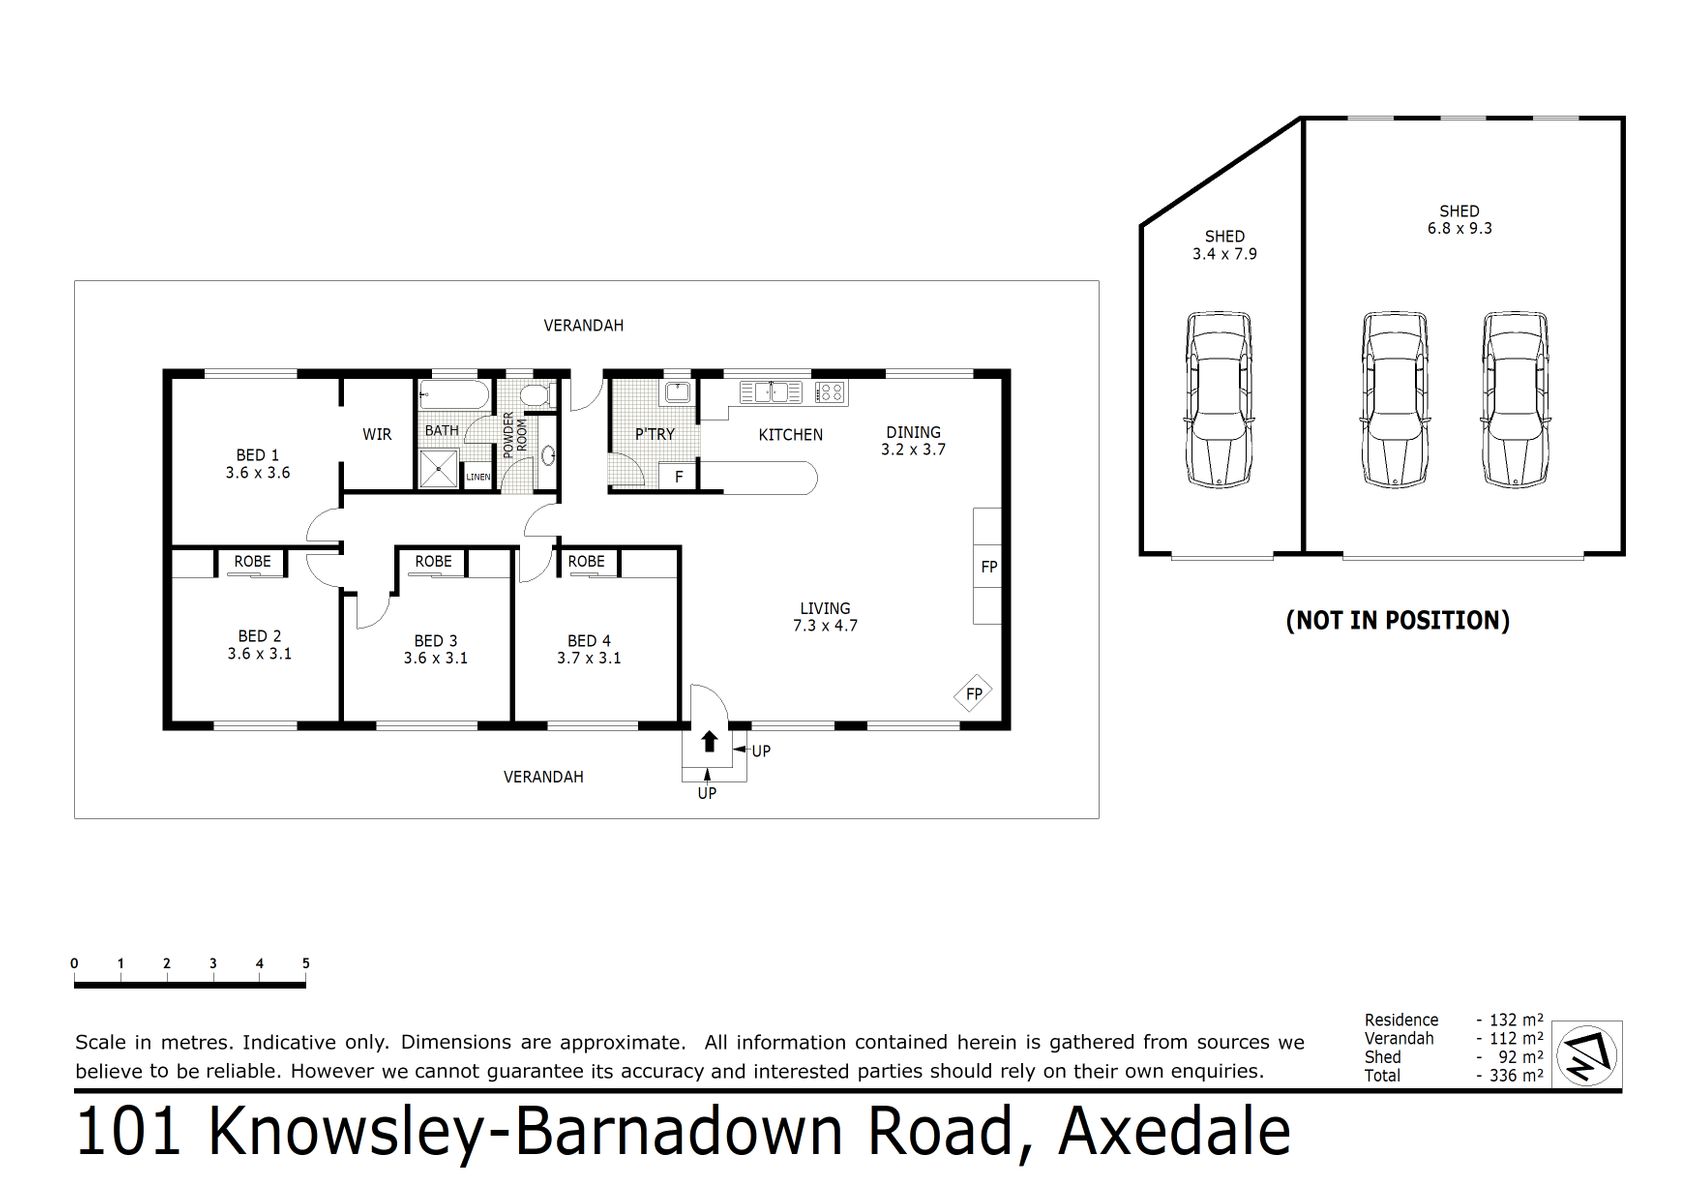 101 Knowsley barnadown Road, Axedale (31 MAR 2021) 132sqm